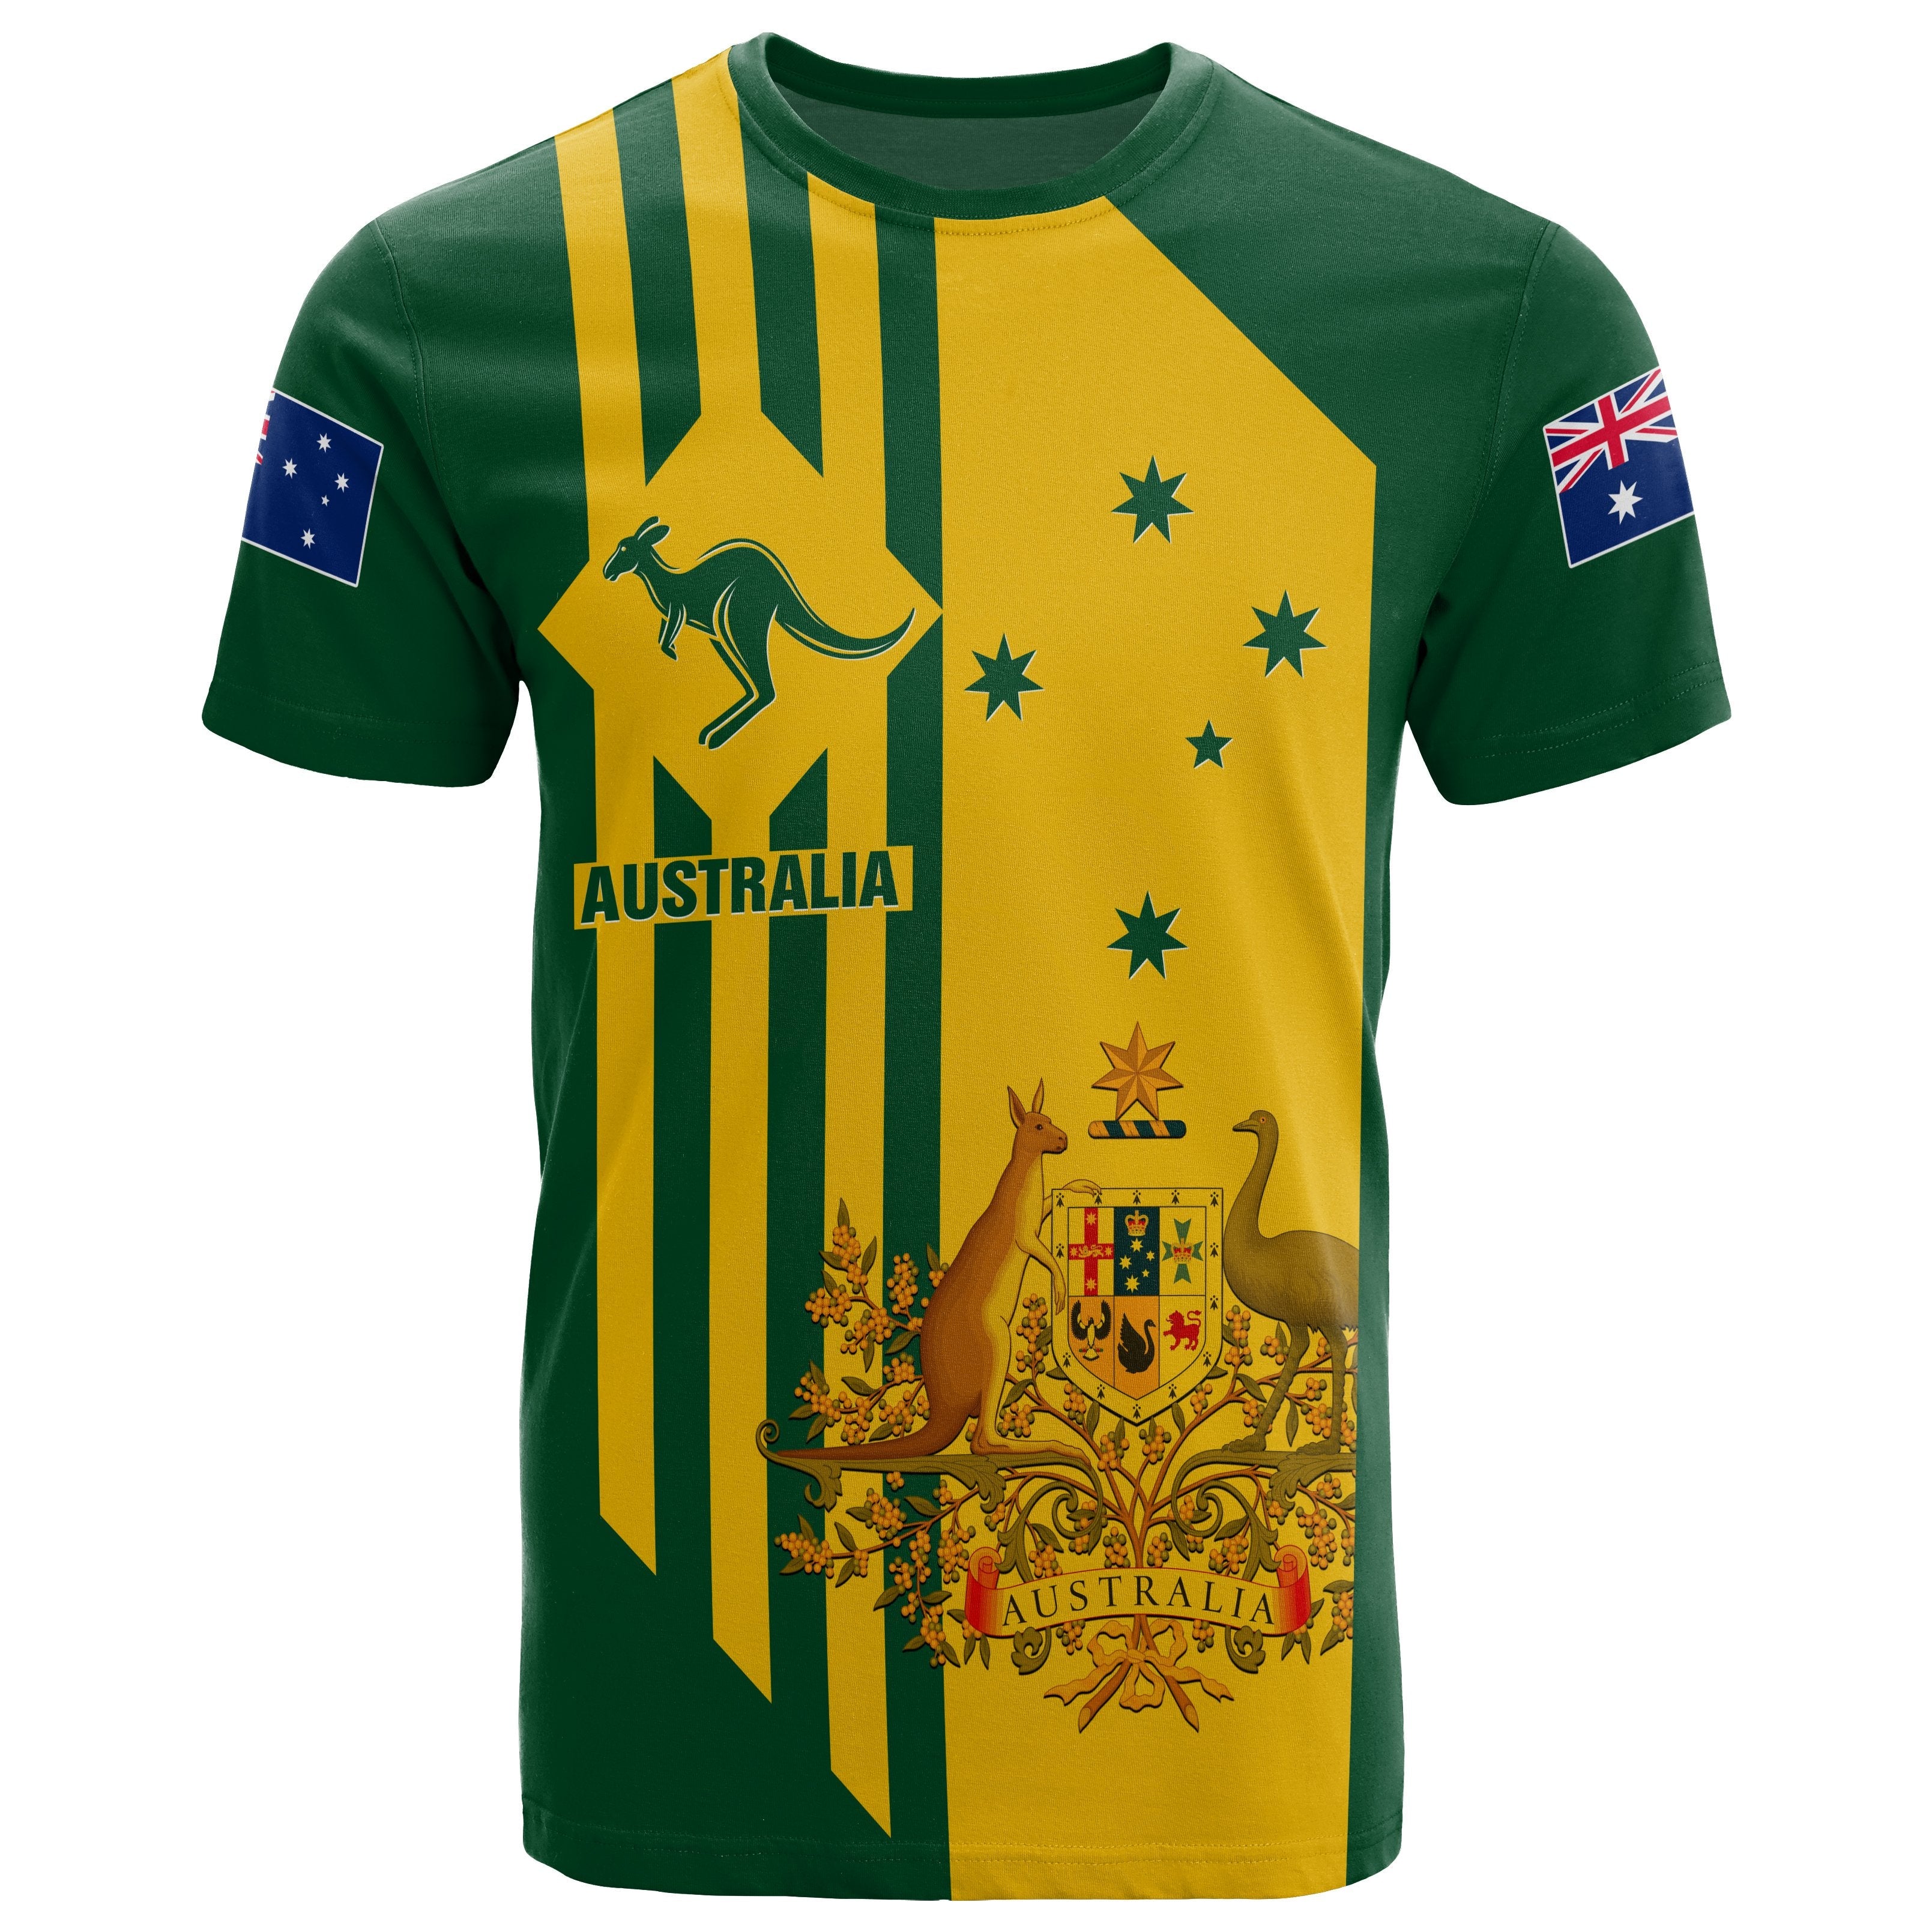 t-shirts-australia-kangaroo-sign-national-color